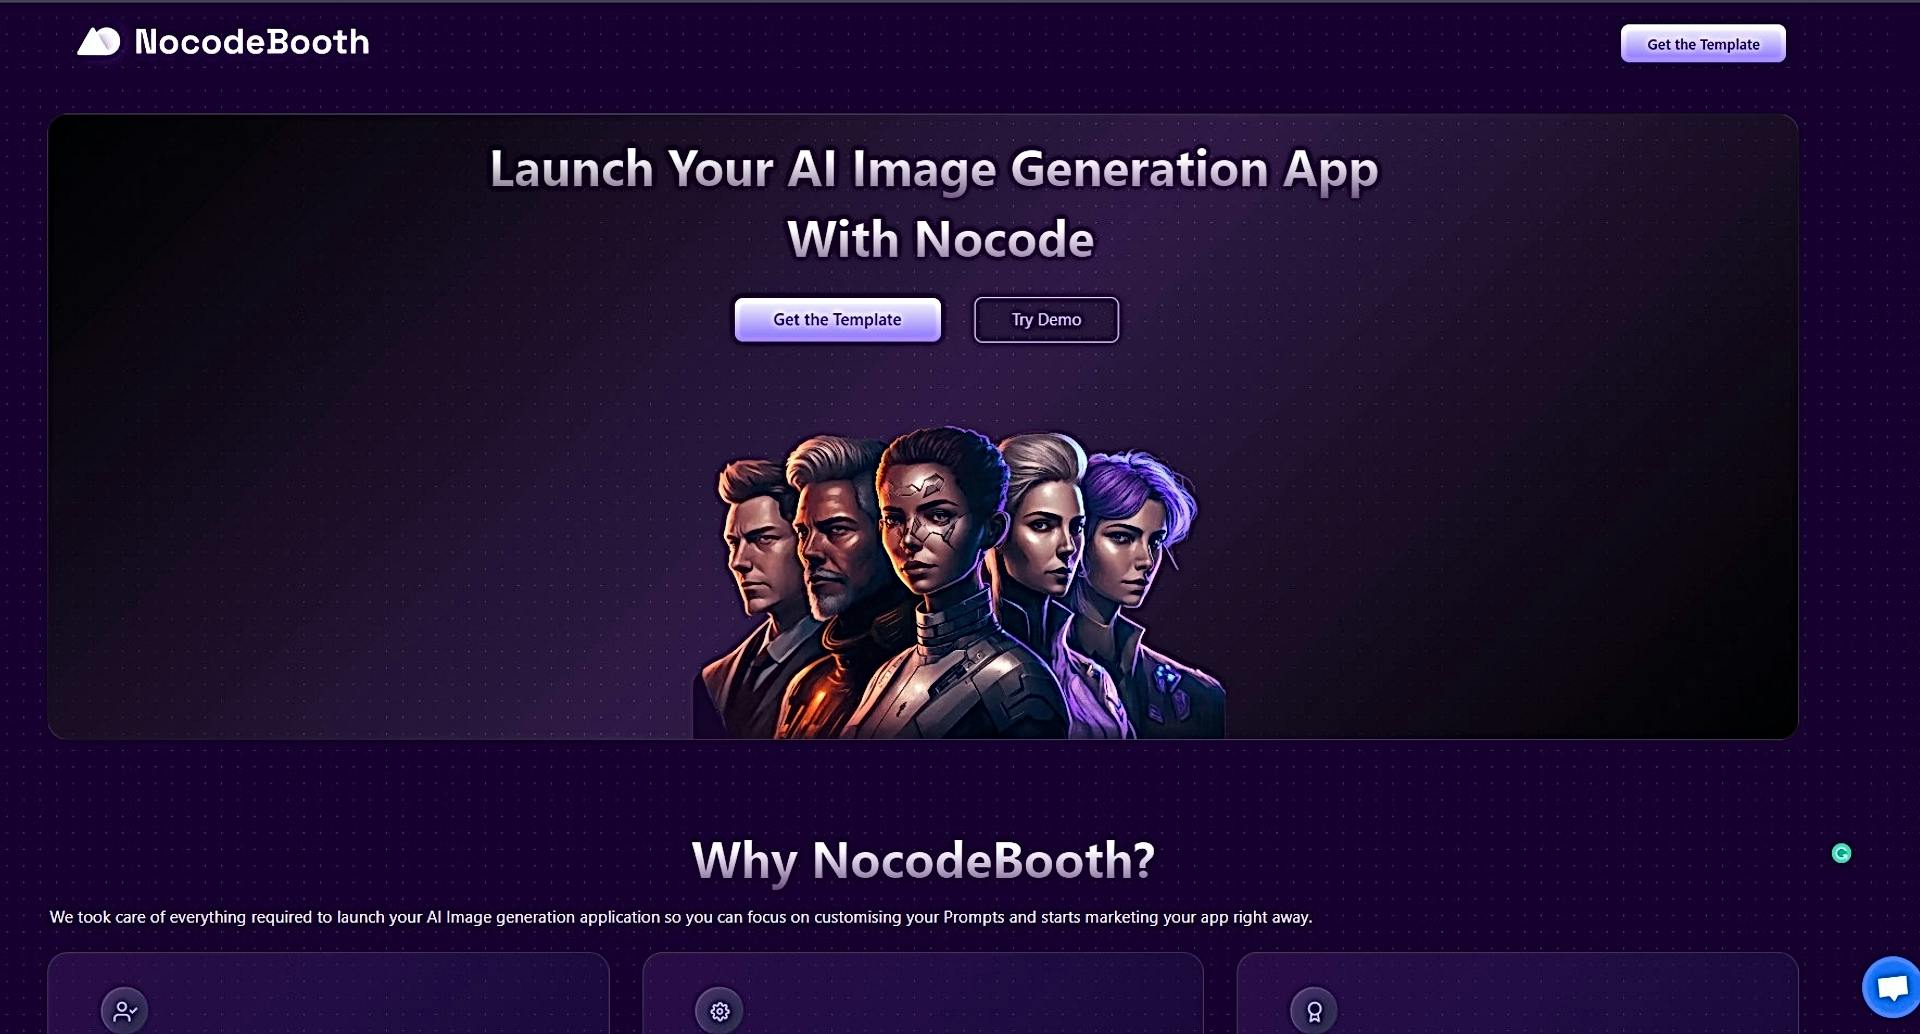 NocodeBooth featured